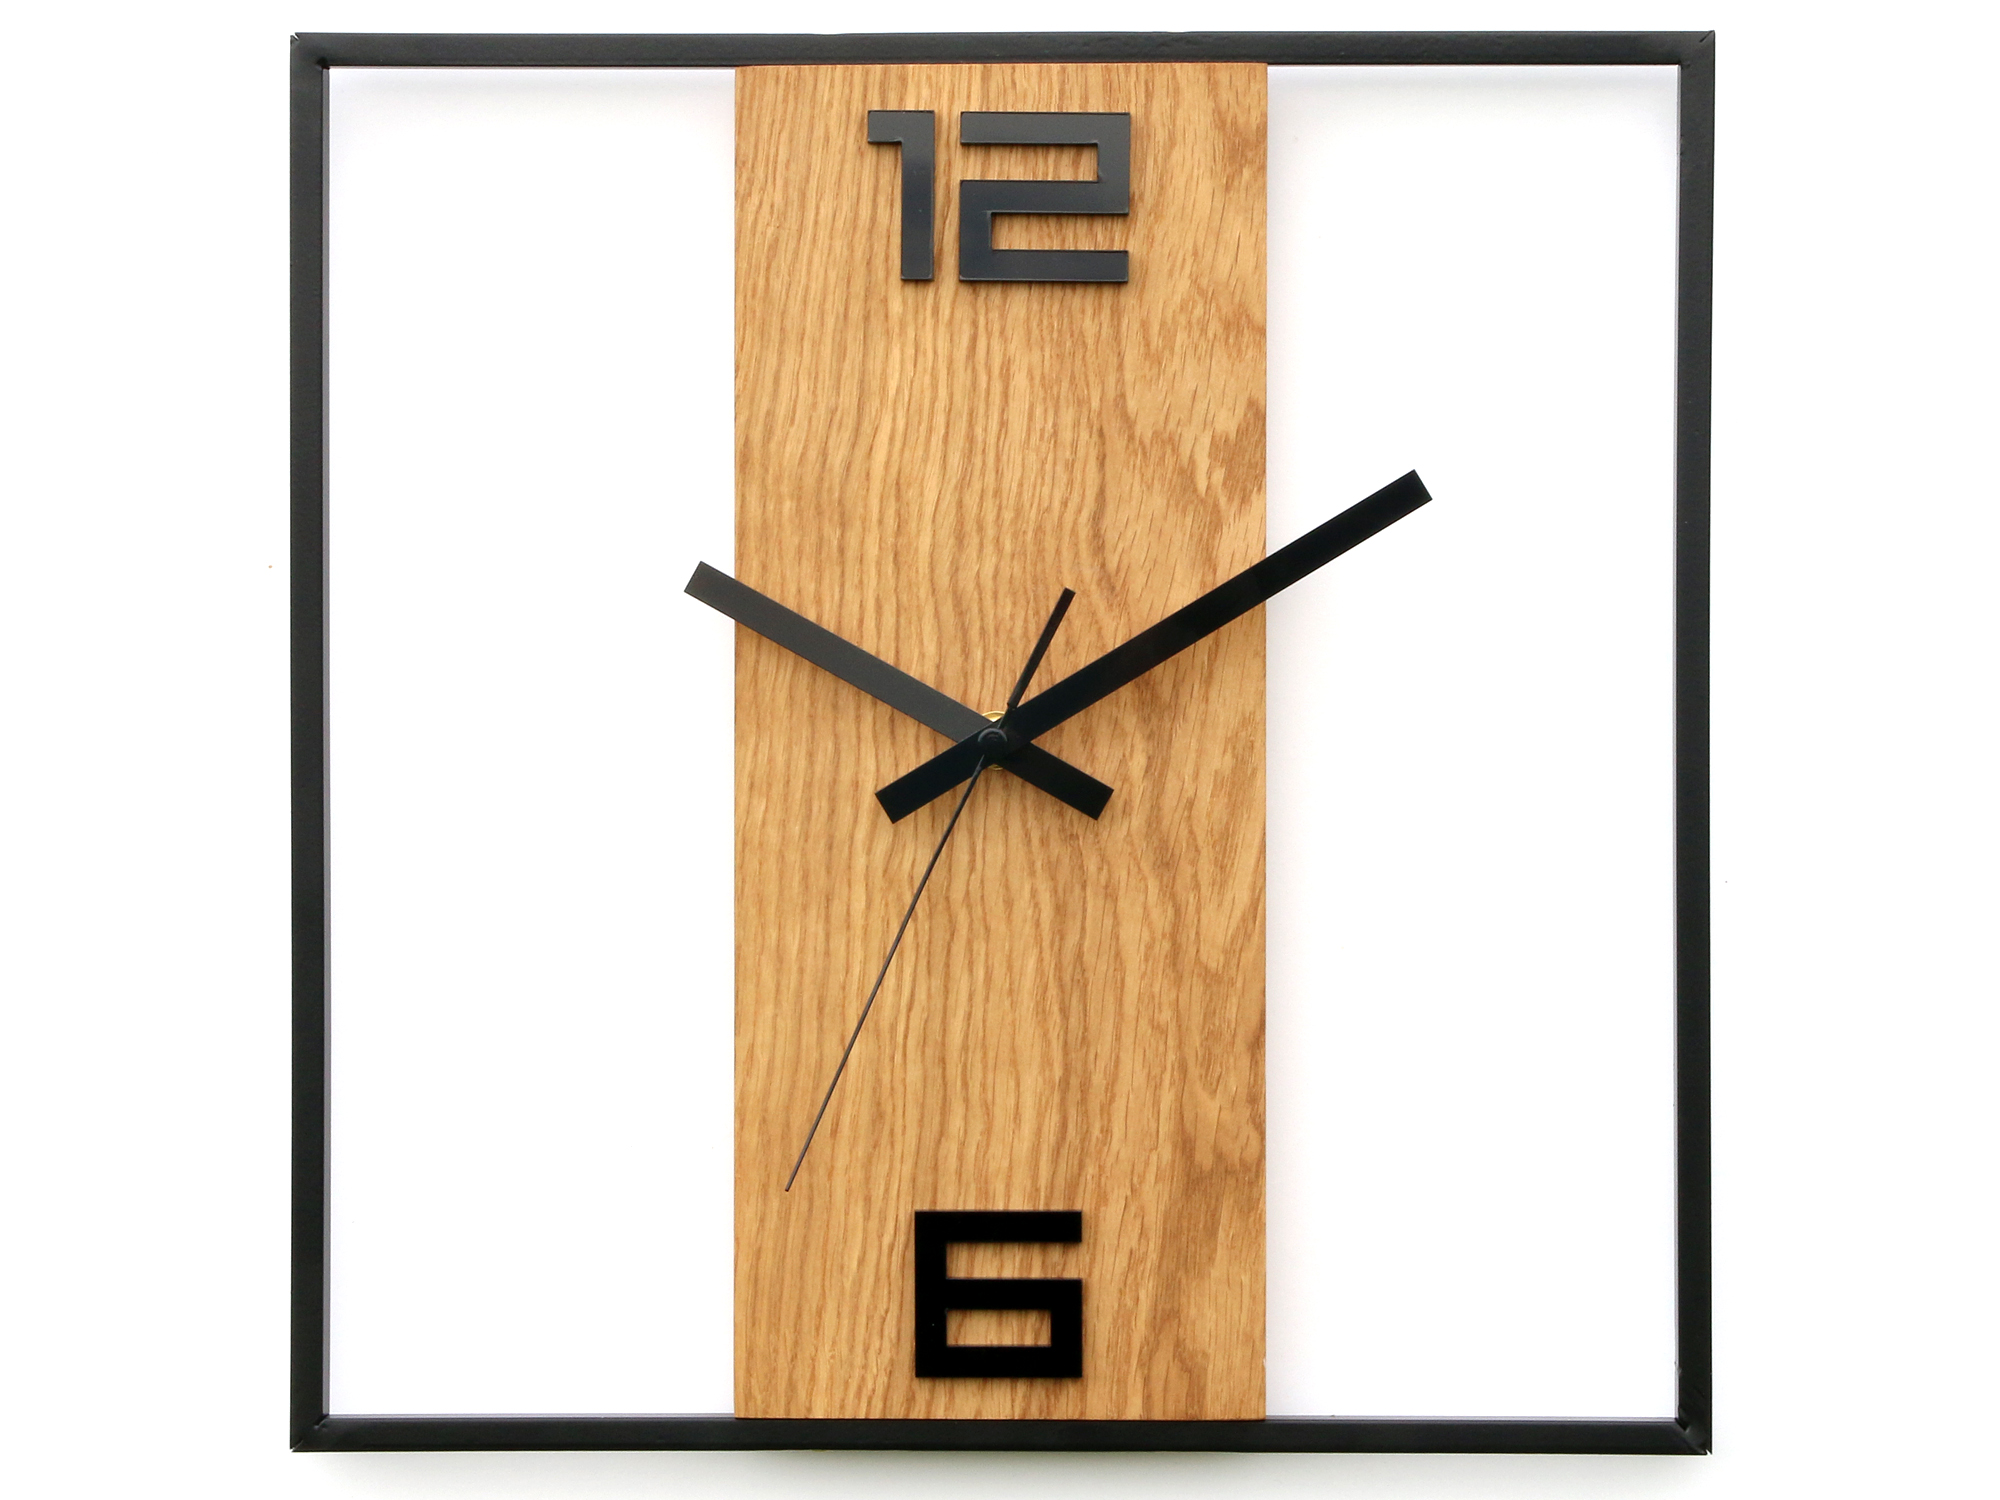 Moderní nástěnné hodiny RETRO dřevo-kov nástěnné hodiny do obývacího pokoje